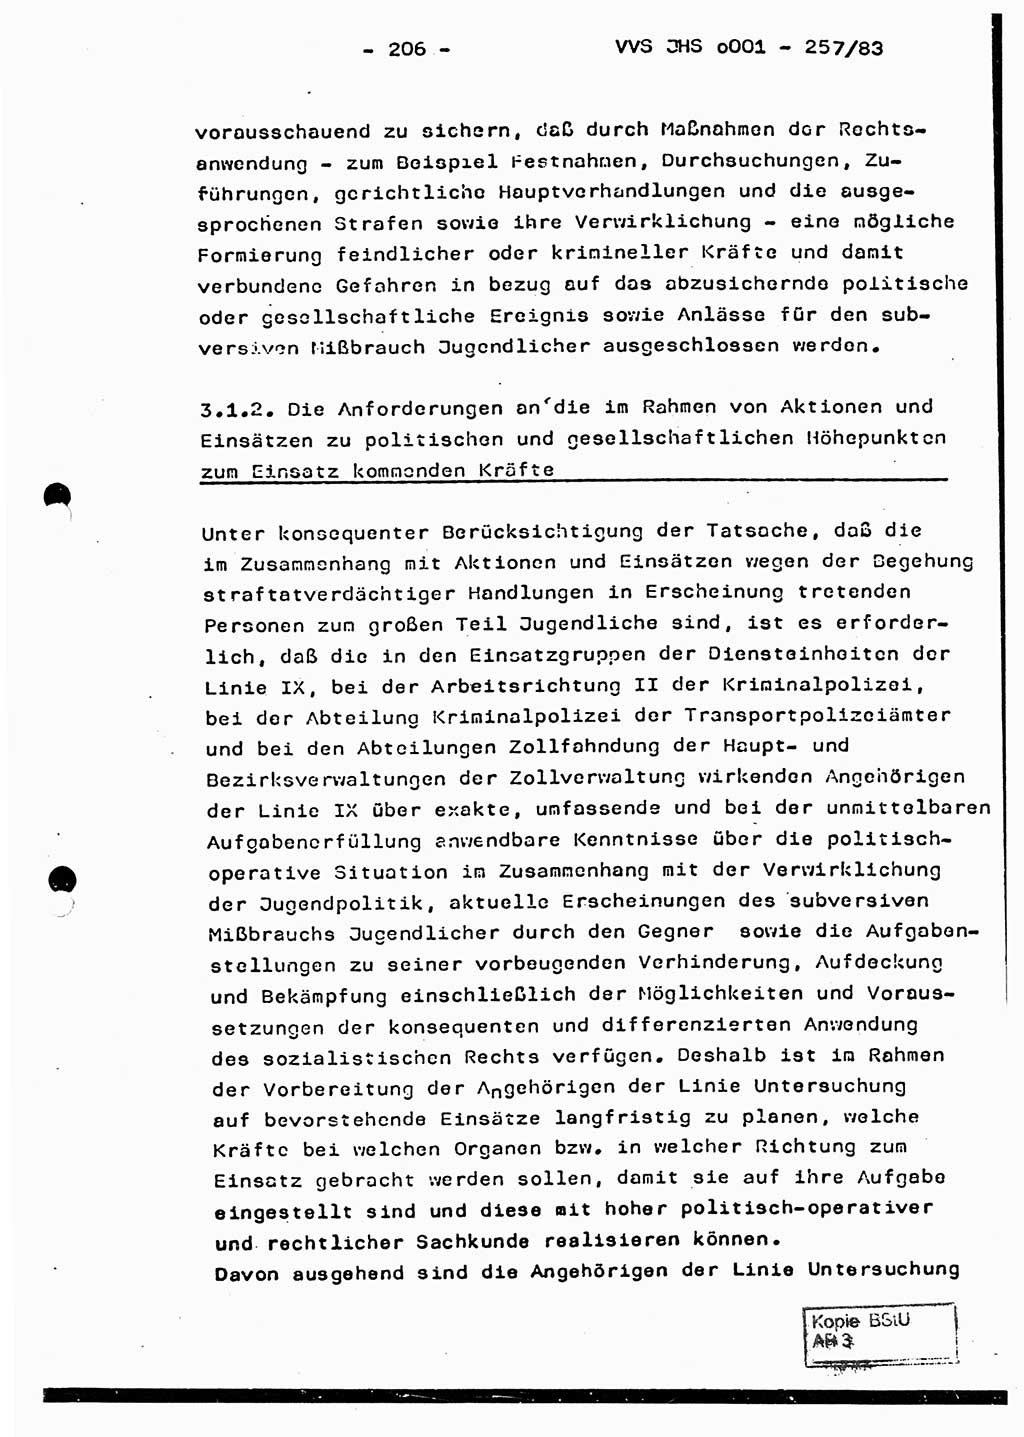 Dissertation, Oberst Helmut Lubas (BV Mdg.), Oberstleutnant Manfred Eschberger (HA IX), Oberleutnant Hans-Jürgen Ludwig (JHS), Ministerium für Staatssicherheit (MfS) [Deutsche Demokratische Republik (DDR)], Juristische Hochschule (JHS), Vertrauliche Verschlußsache (VVS) o001-257/83, Potsdam 1983, Seite 206 (Diss. MfS DDR JHS VVS o001-257/83 1983, S. 206)